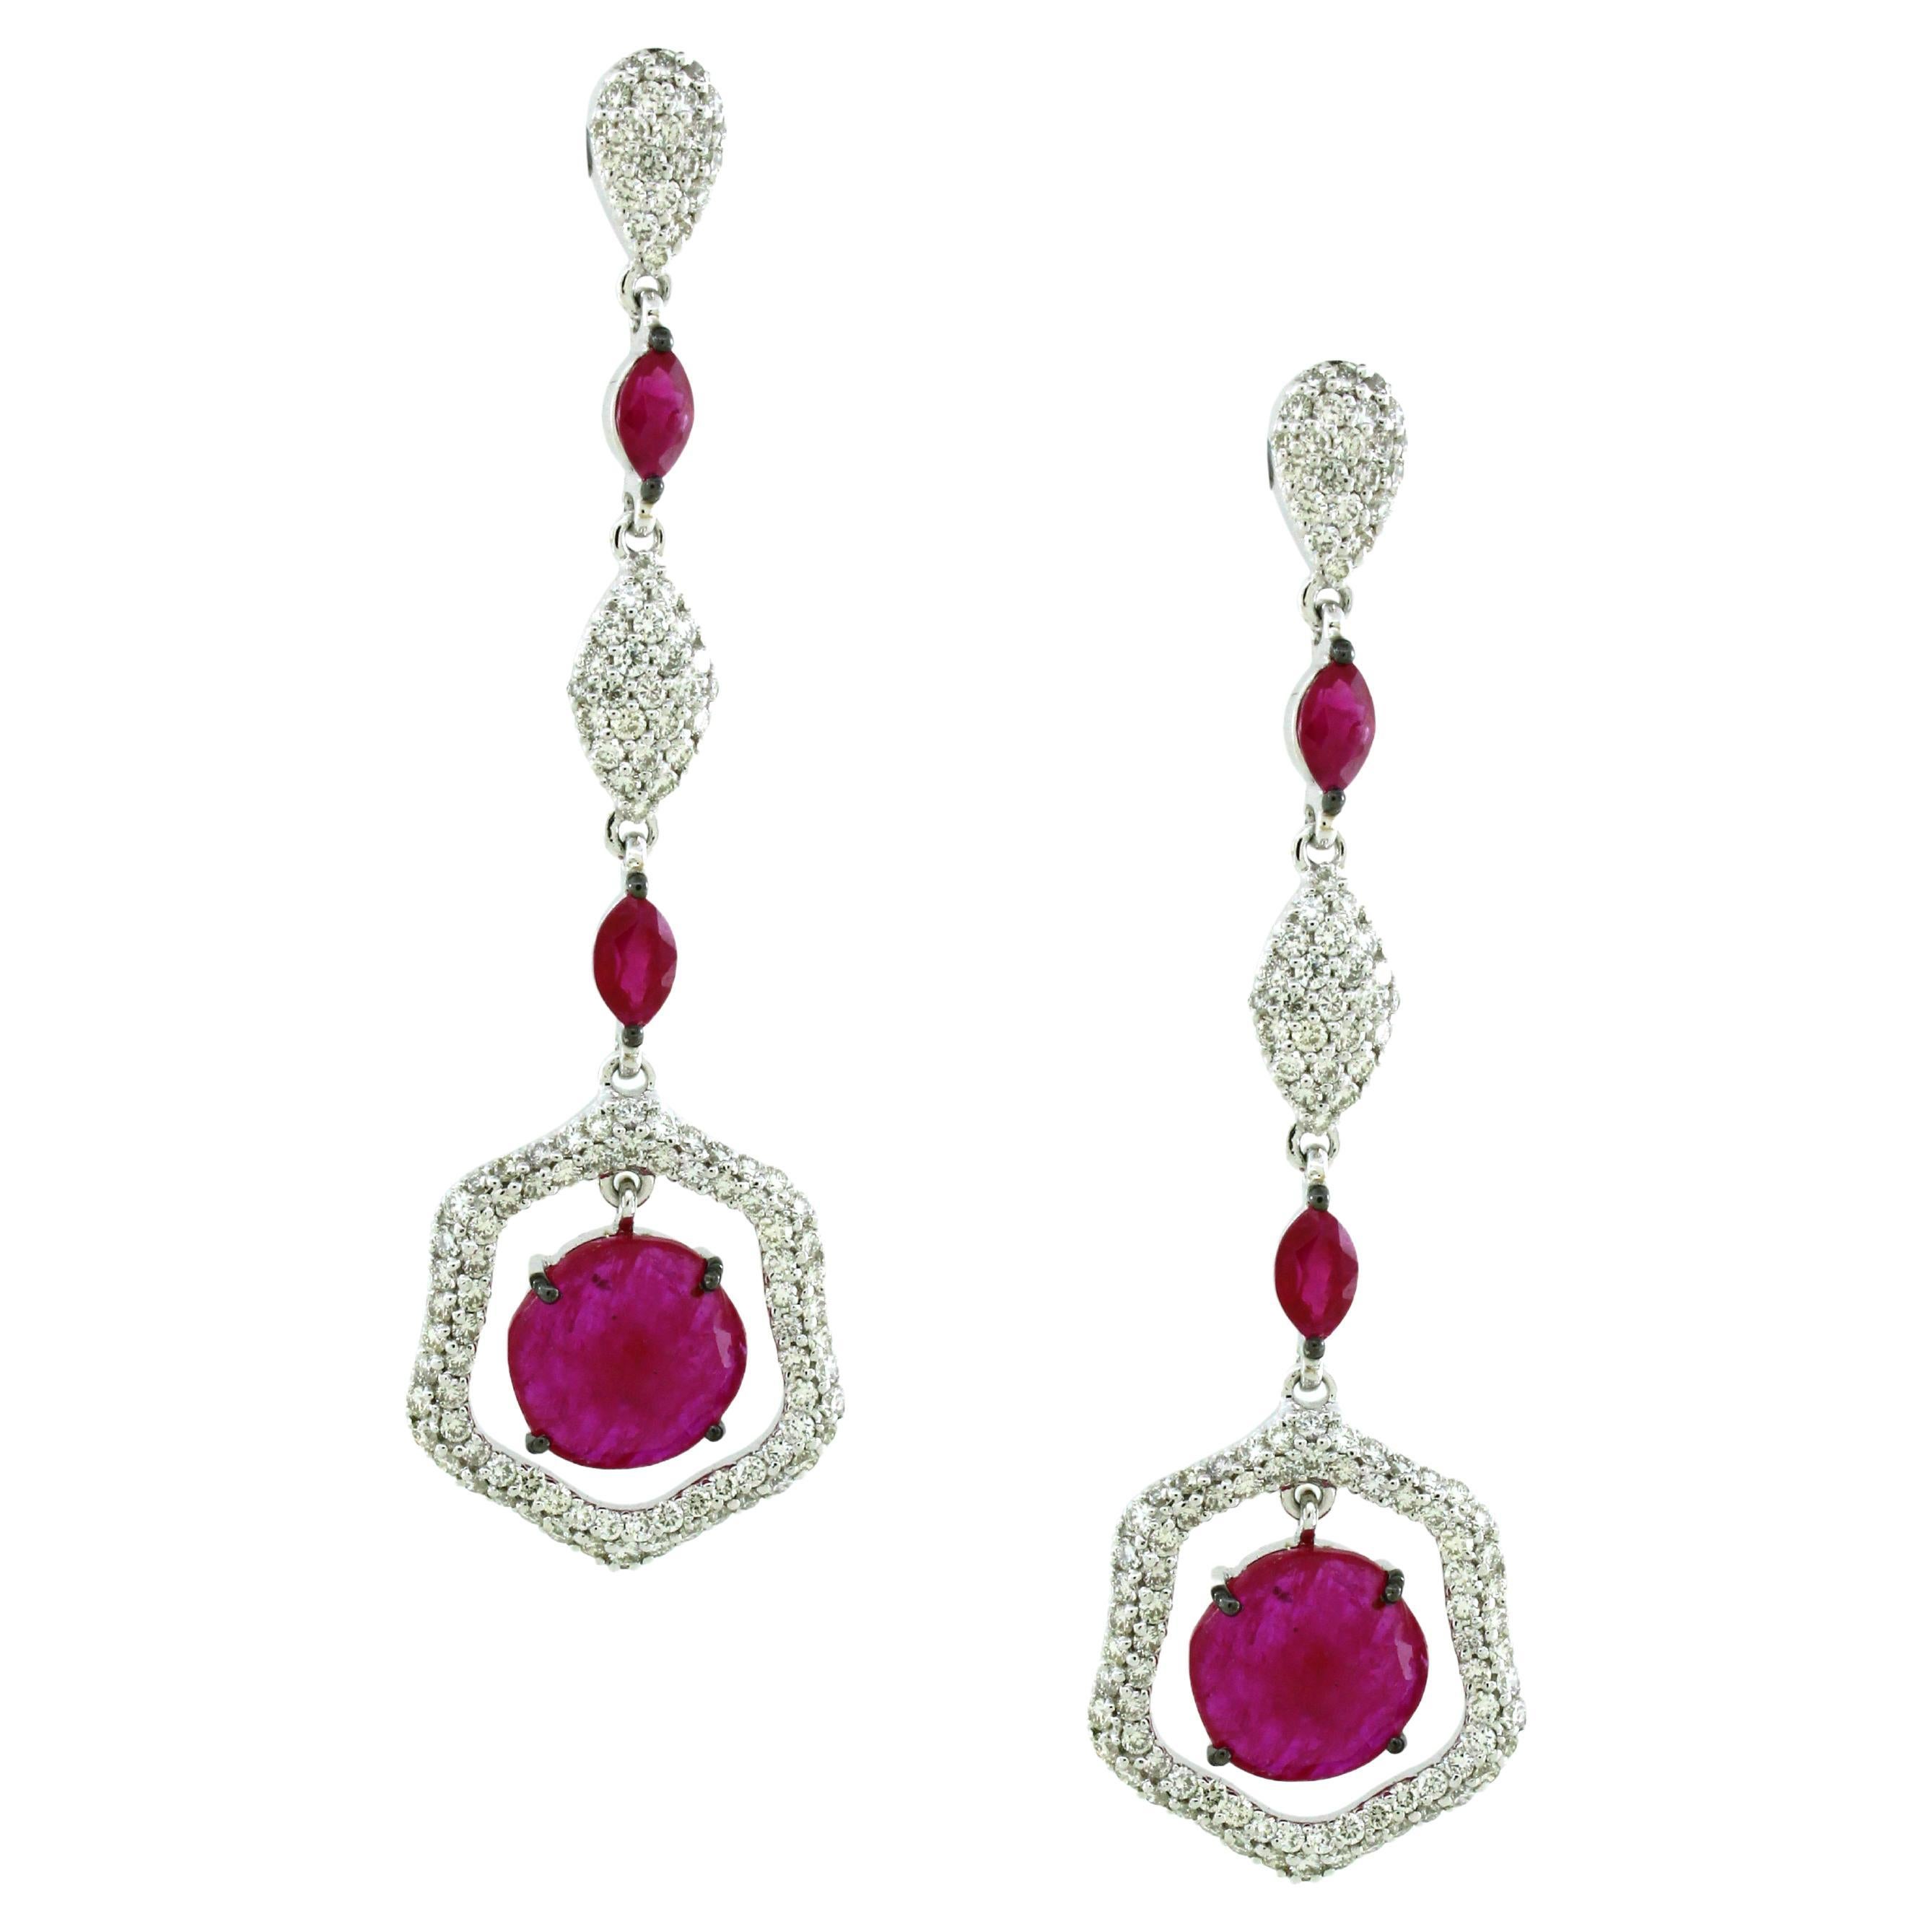 5.95 carats of Ruby Drop Earrings